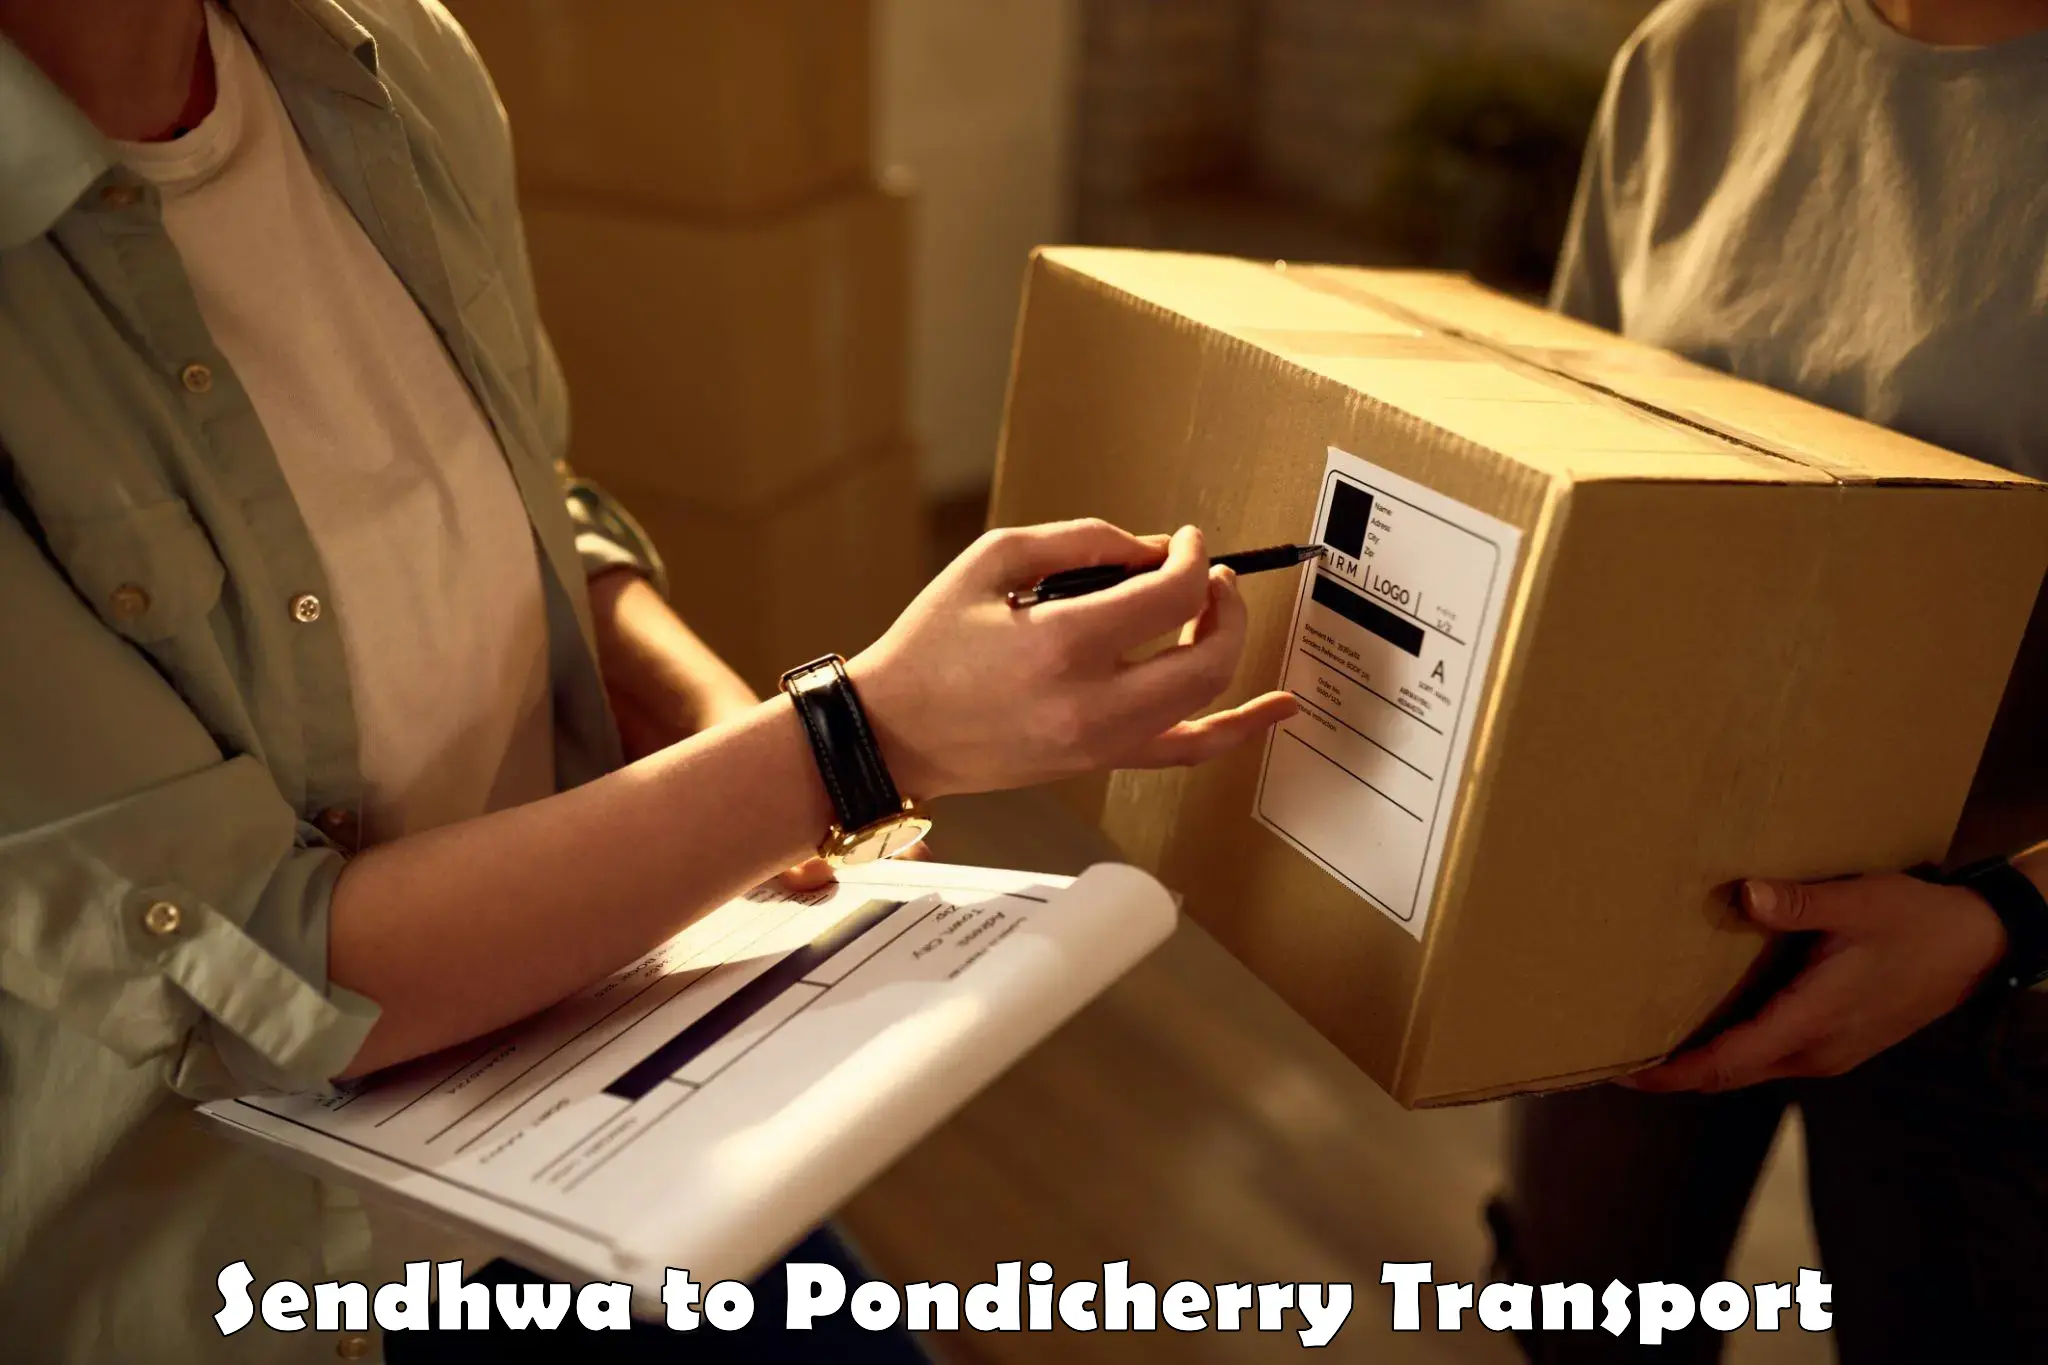 Transport services Sendhwa to Pondicherry